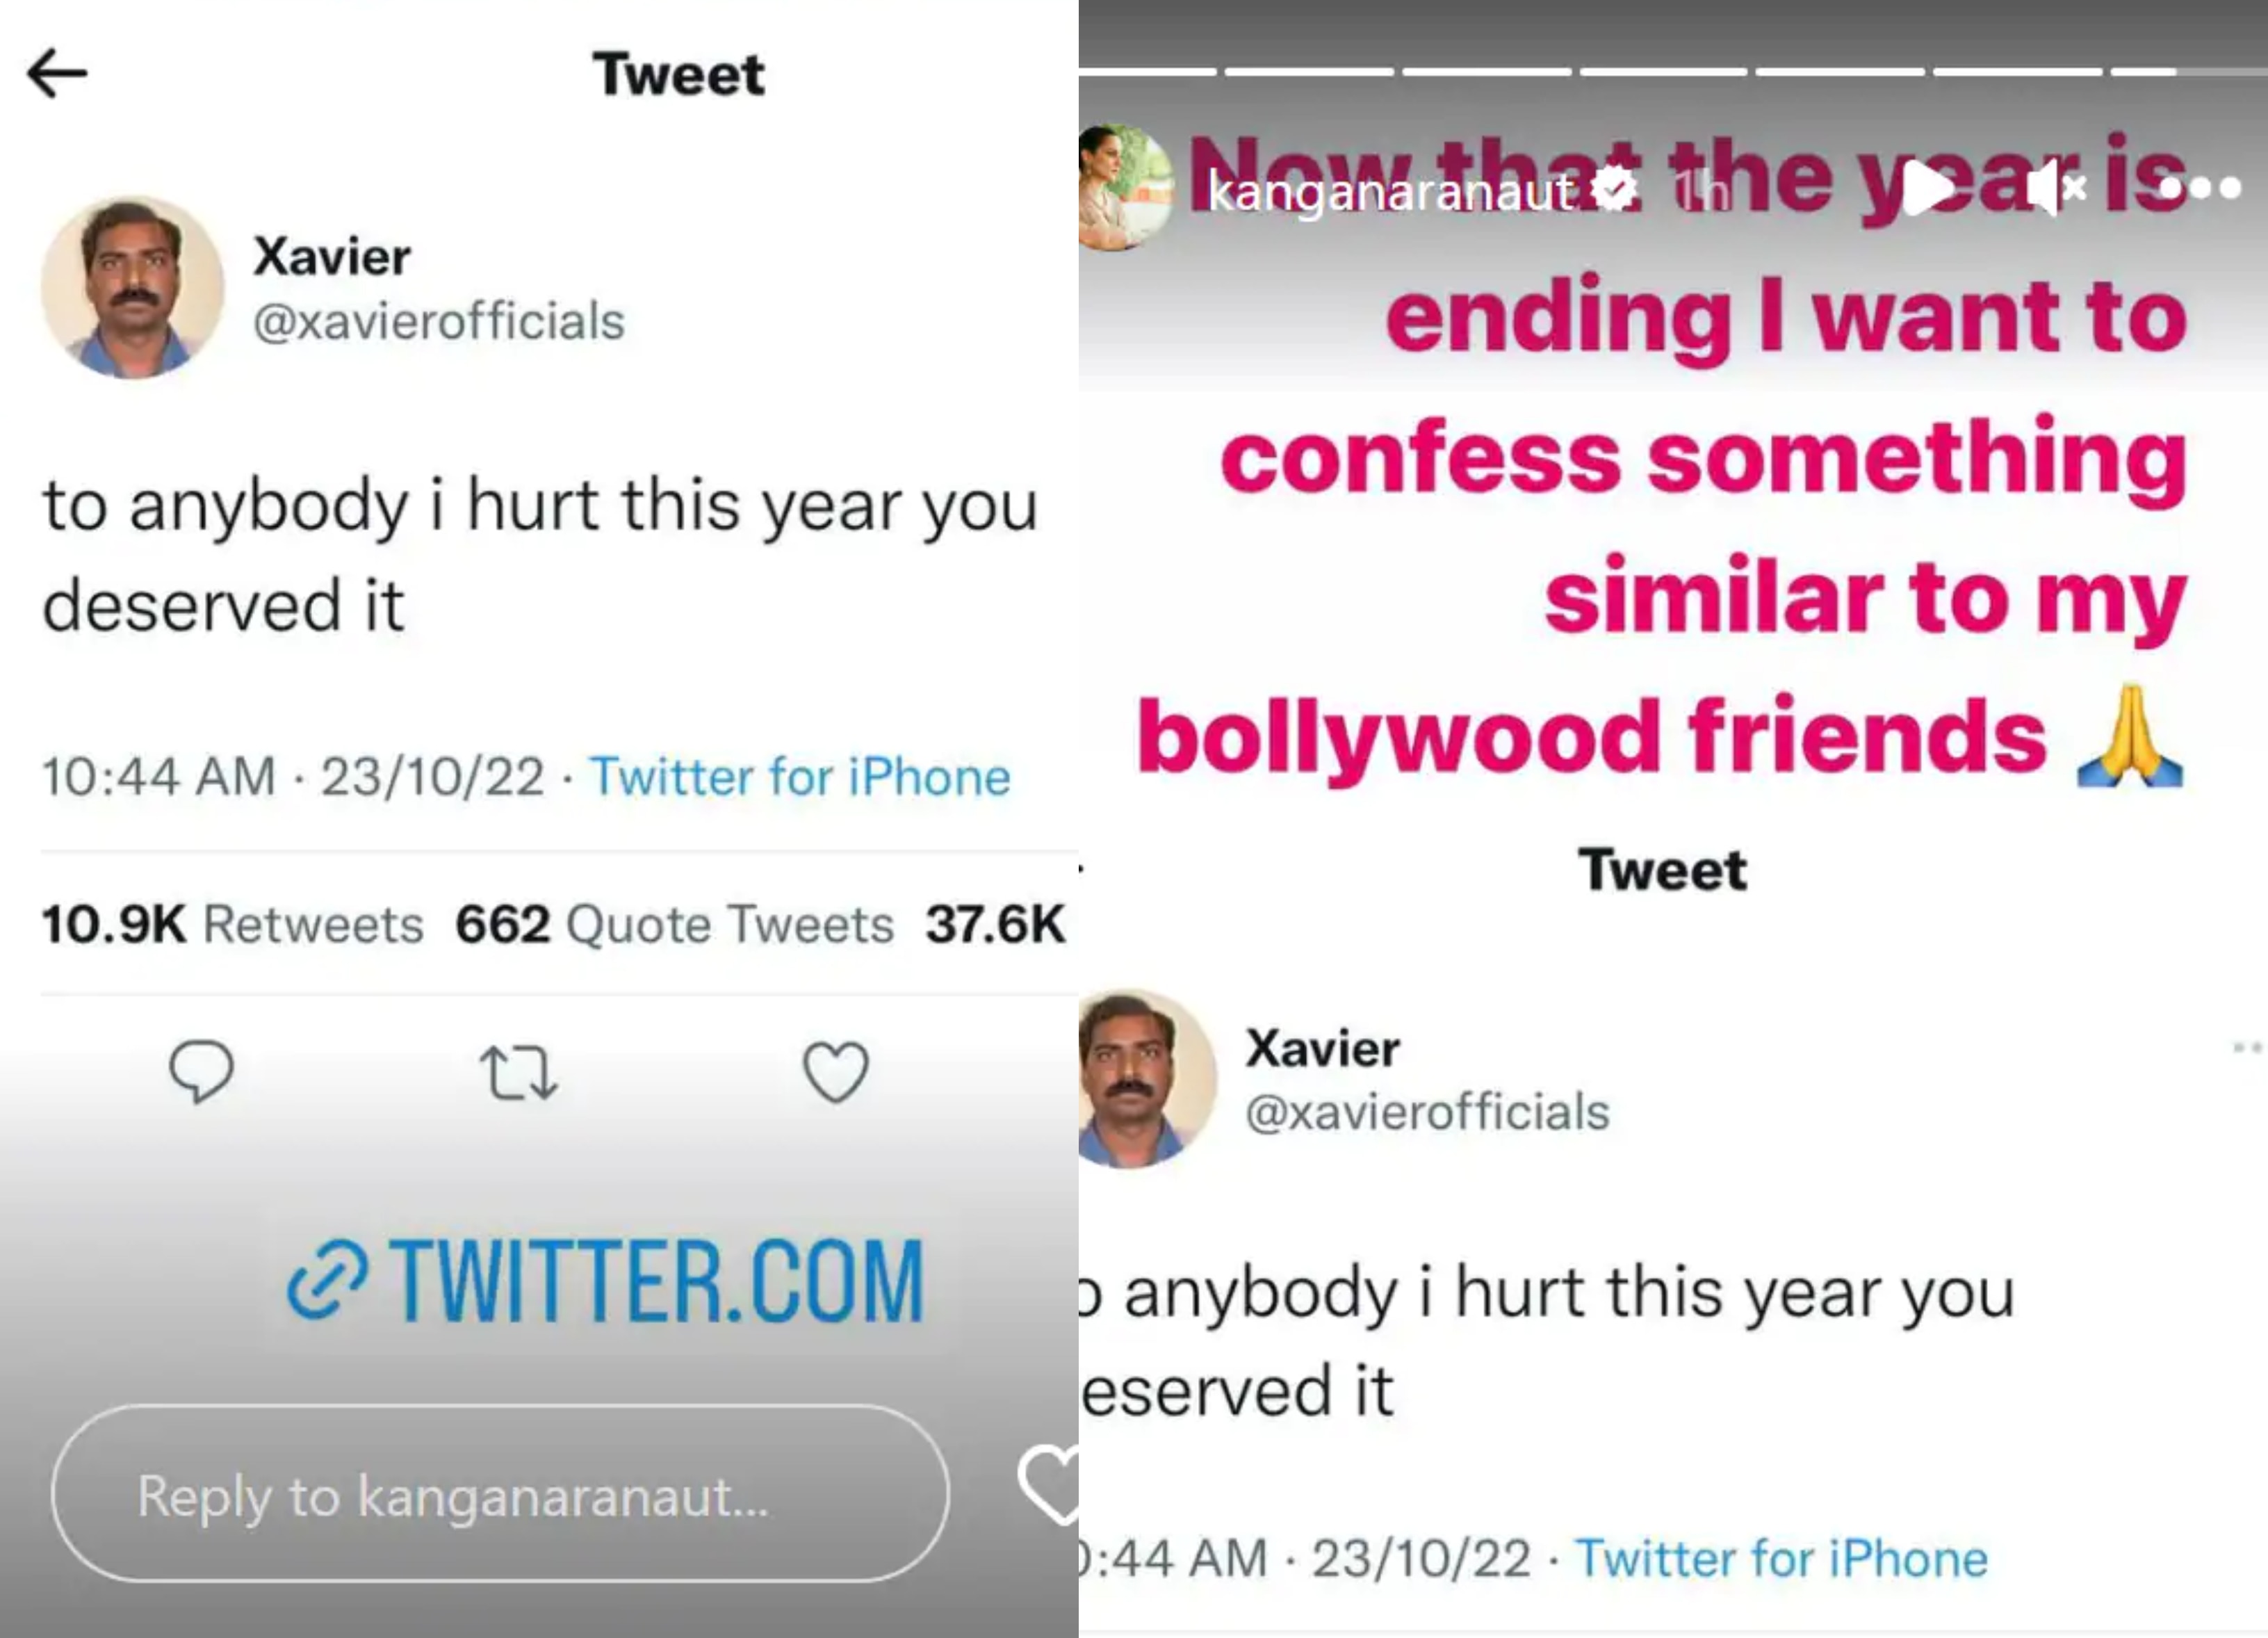 Ekta Kapoor की दिवाली पार्टी के बाद Kangana Ranaut ने बॉलीवुड के लोगों पर ली चुटकी, क्यों कहा 'तुम इसी के लायक थे'?